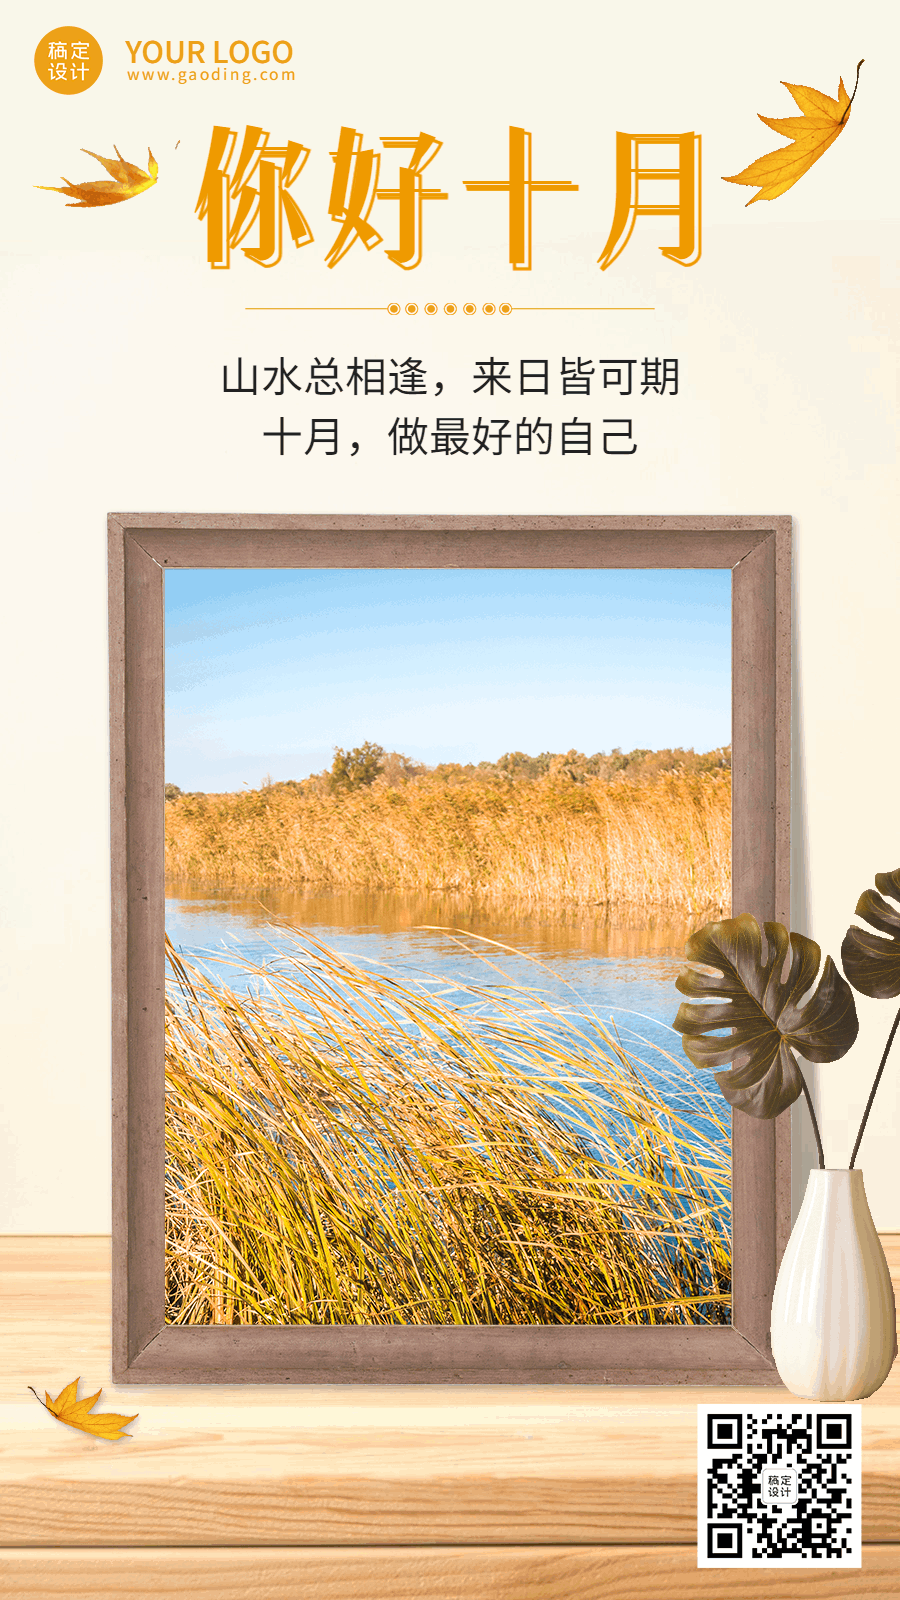 通用10月你好祝福文艺GIF动态海报预览效果